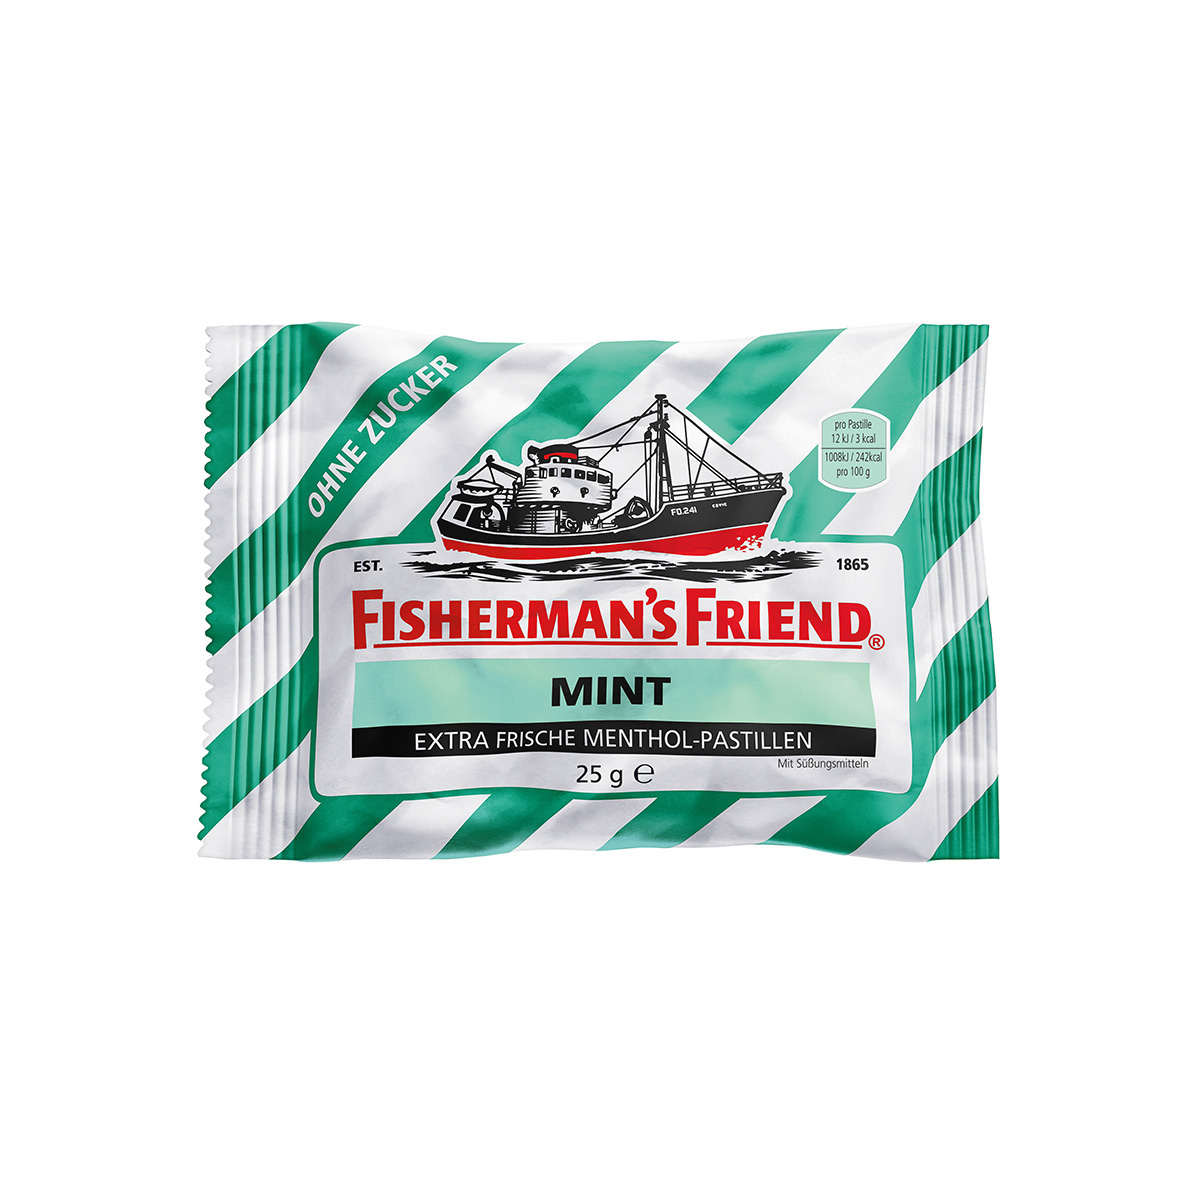 FISHERMAN'S FRIEND Mint ohne Zucker Inhalt 24